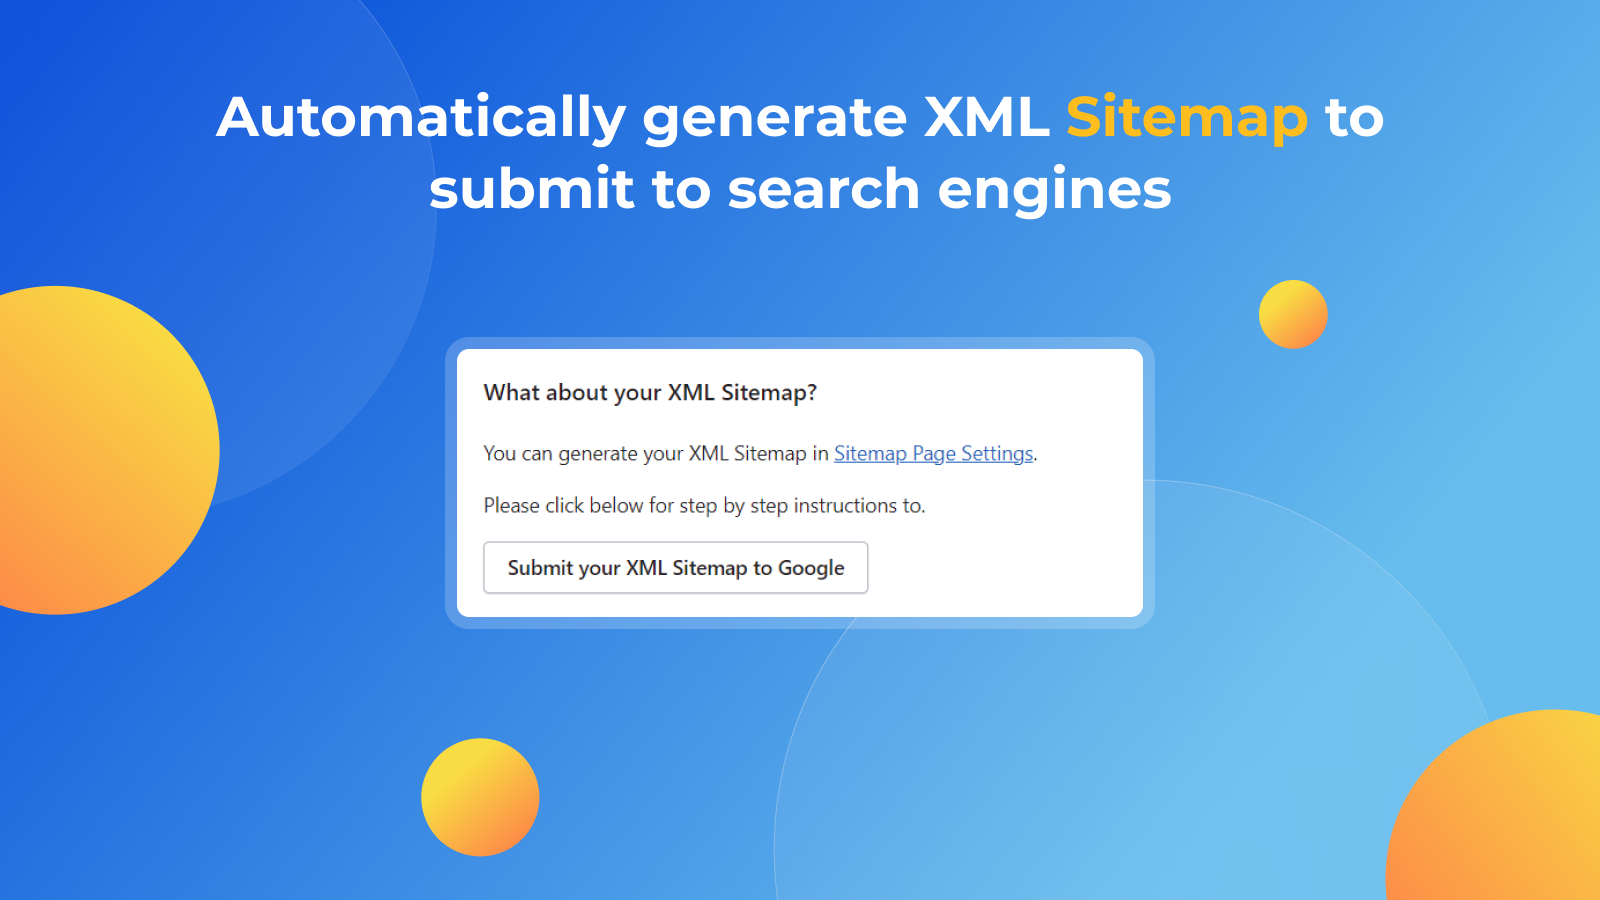 Soumettez votre sitemap XML personnalisé à Google Console